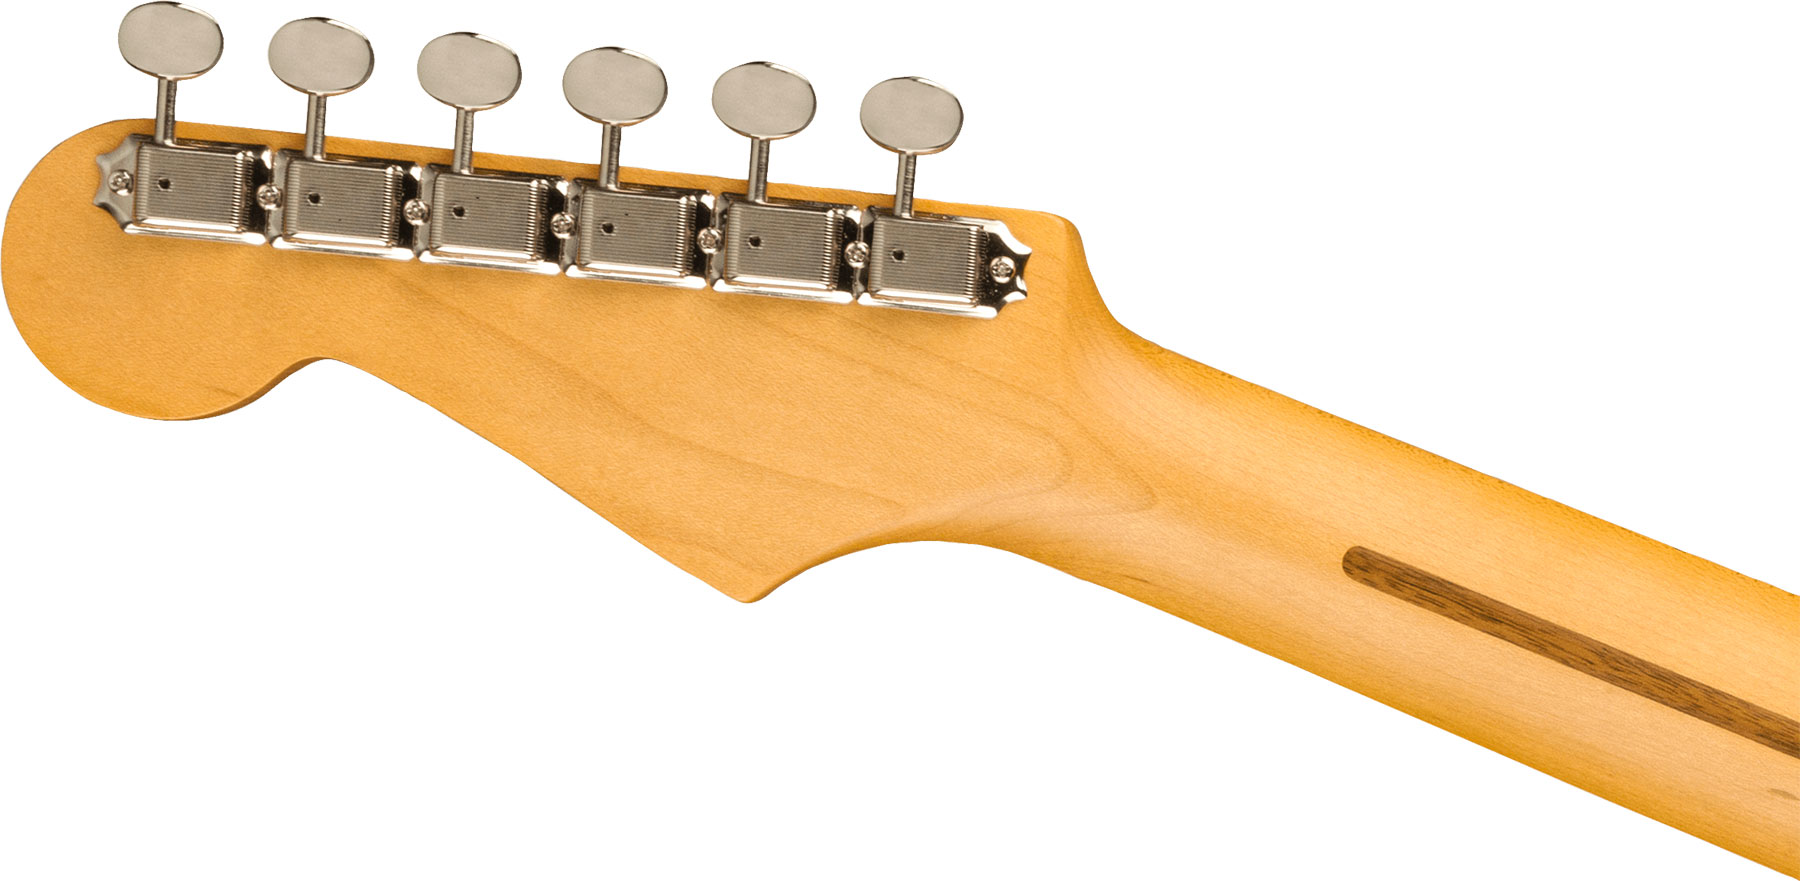 Fender Strat Jv Modified '50s Jap Hss Trem Mn - 2-color Sunburst - Elektrische gitaar in Str-vorm - Variation 3